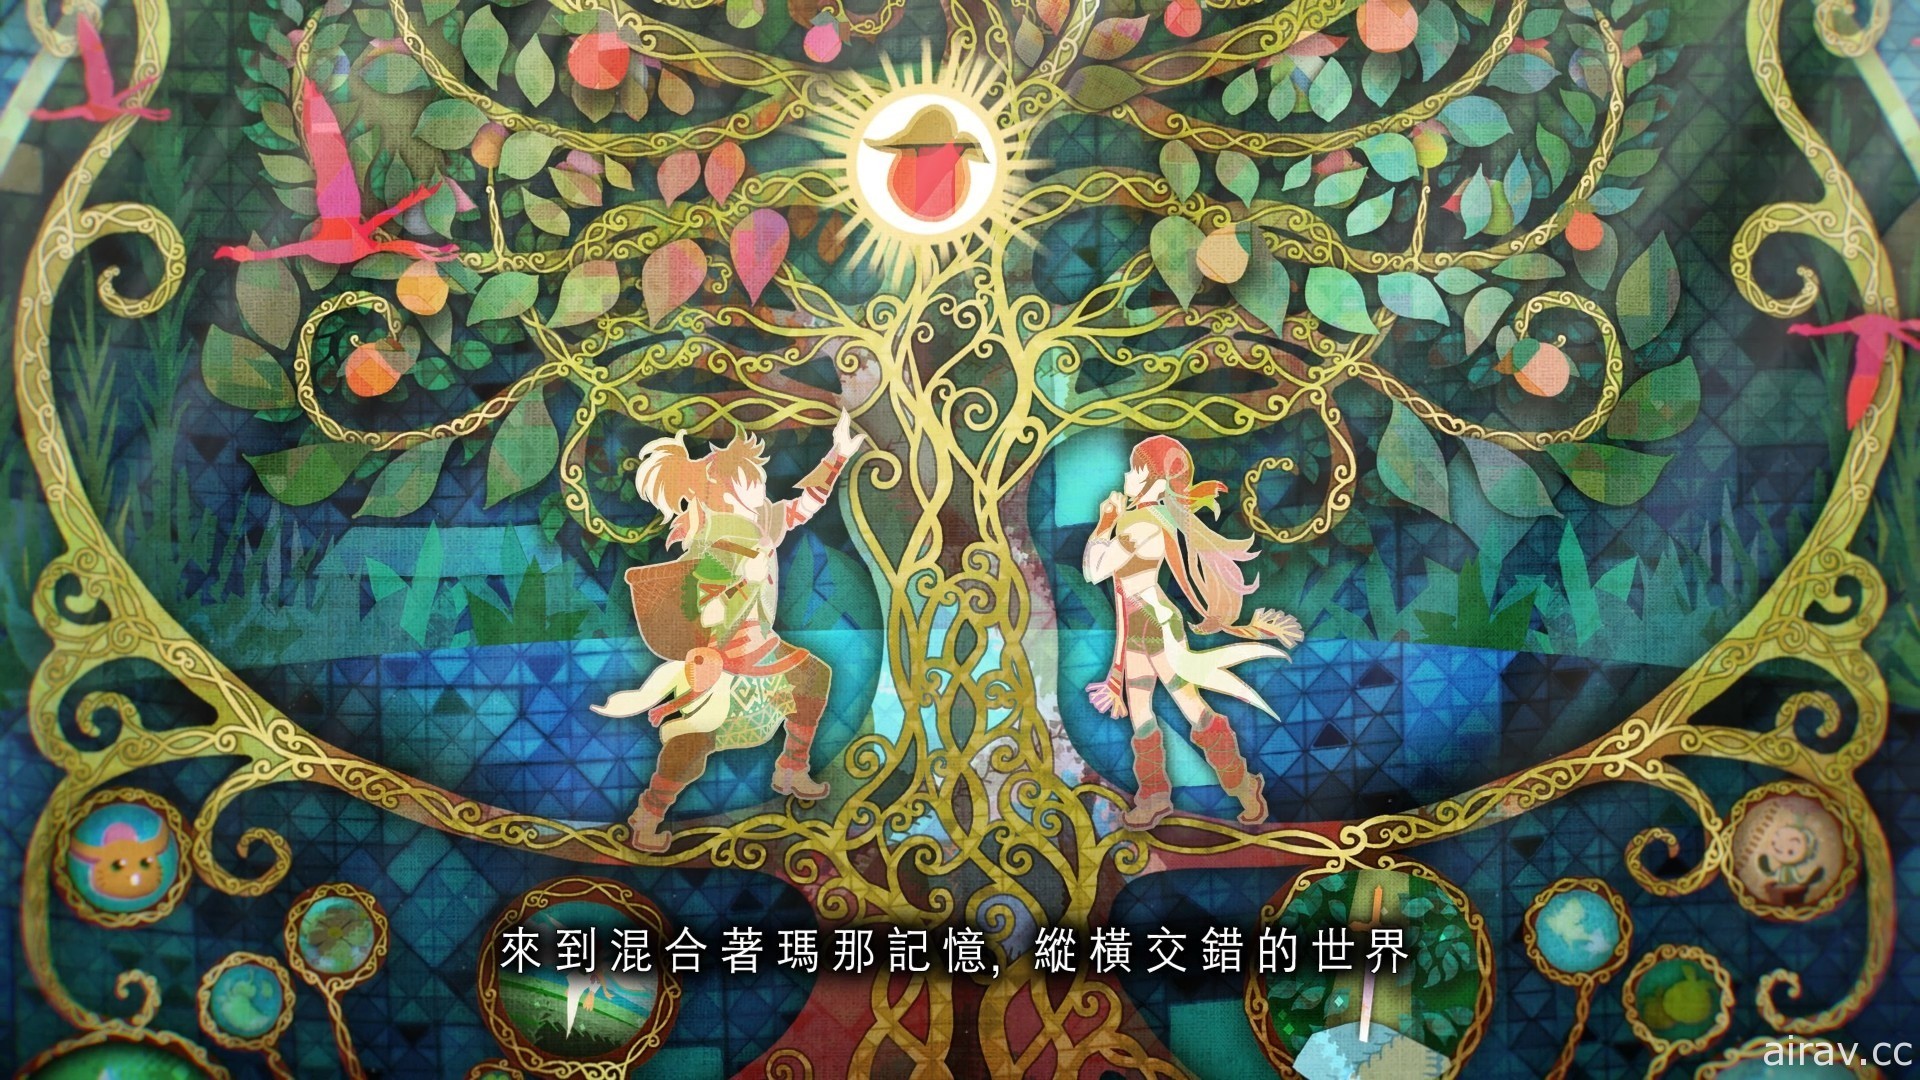 《圣剑传说》系列手机 ARPG《圣剑传说 ECHOES of MANA》公开中文官方网站